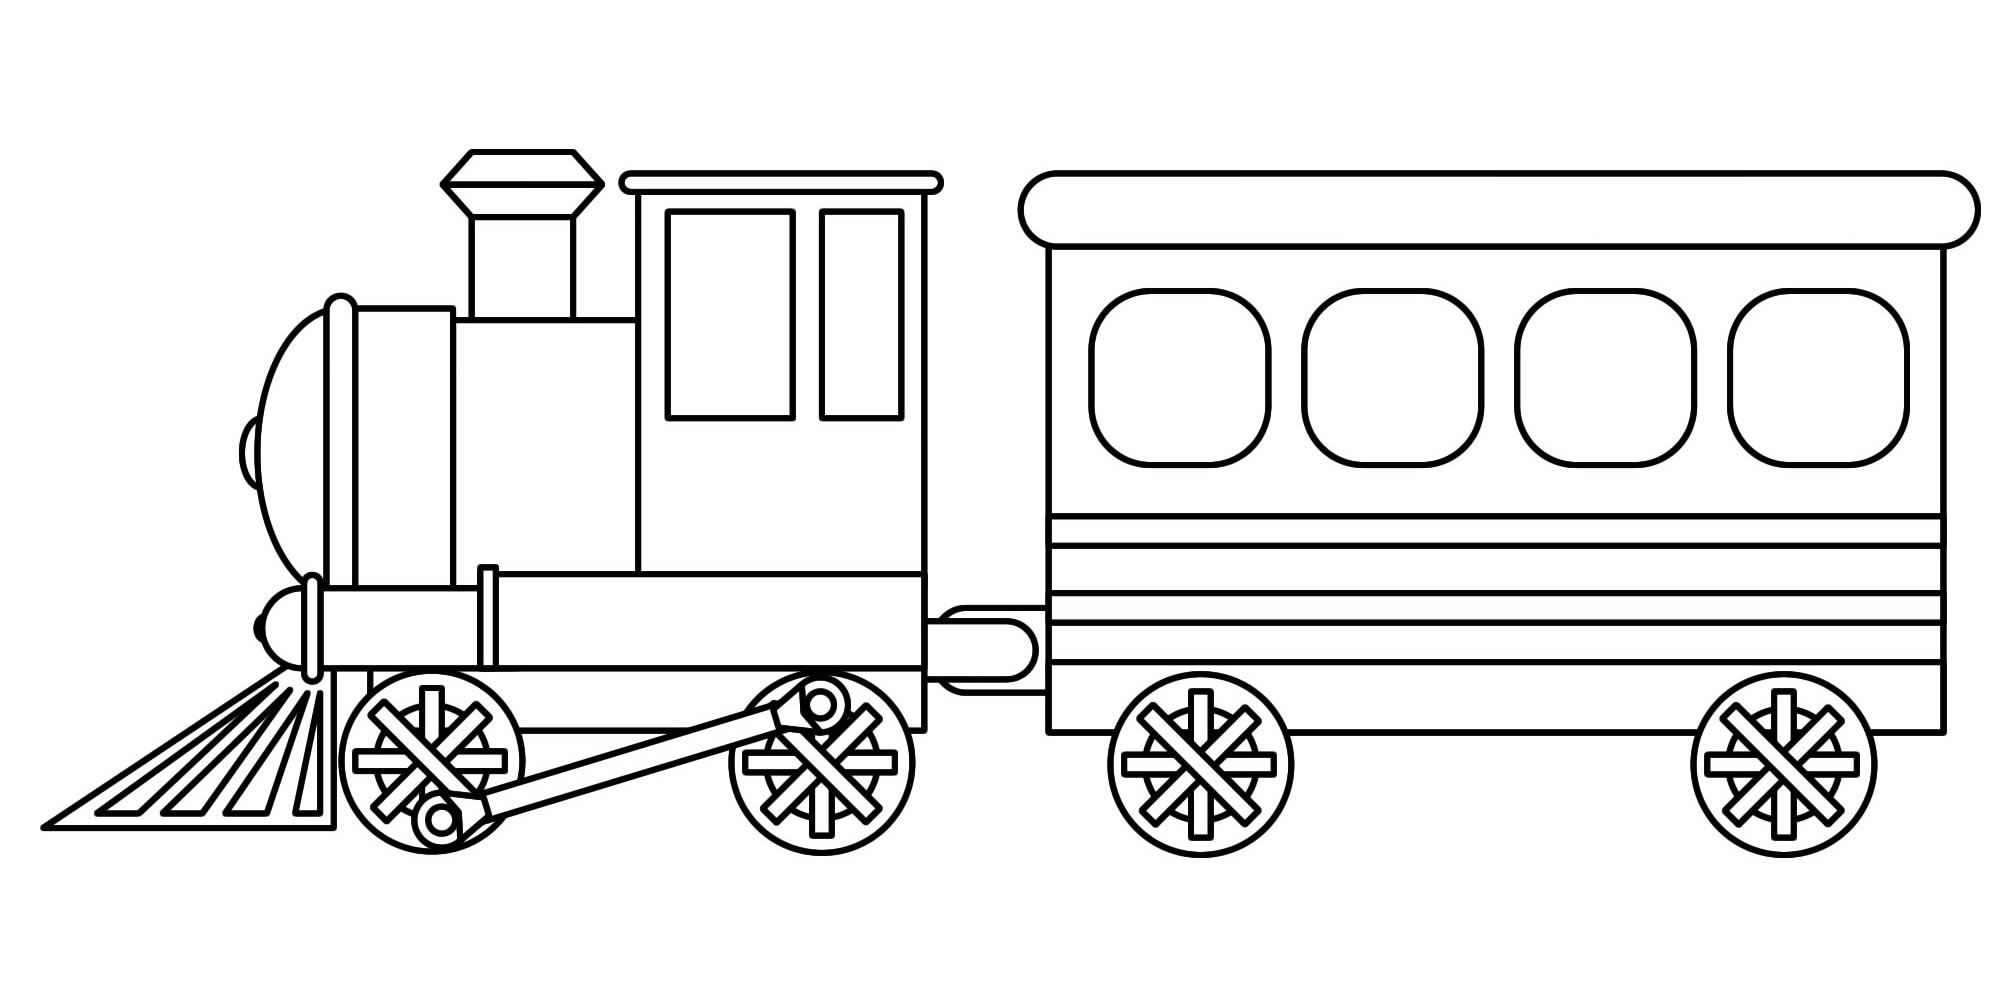 Поезд, локомотив и вагон. Раскраска для детей.